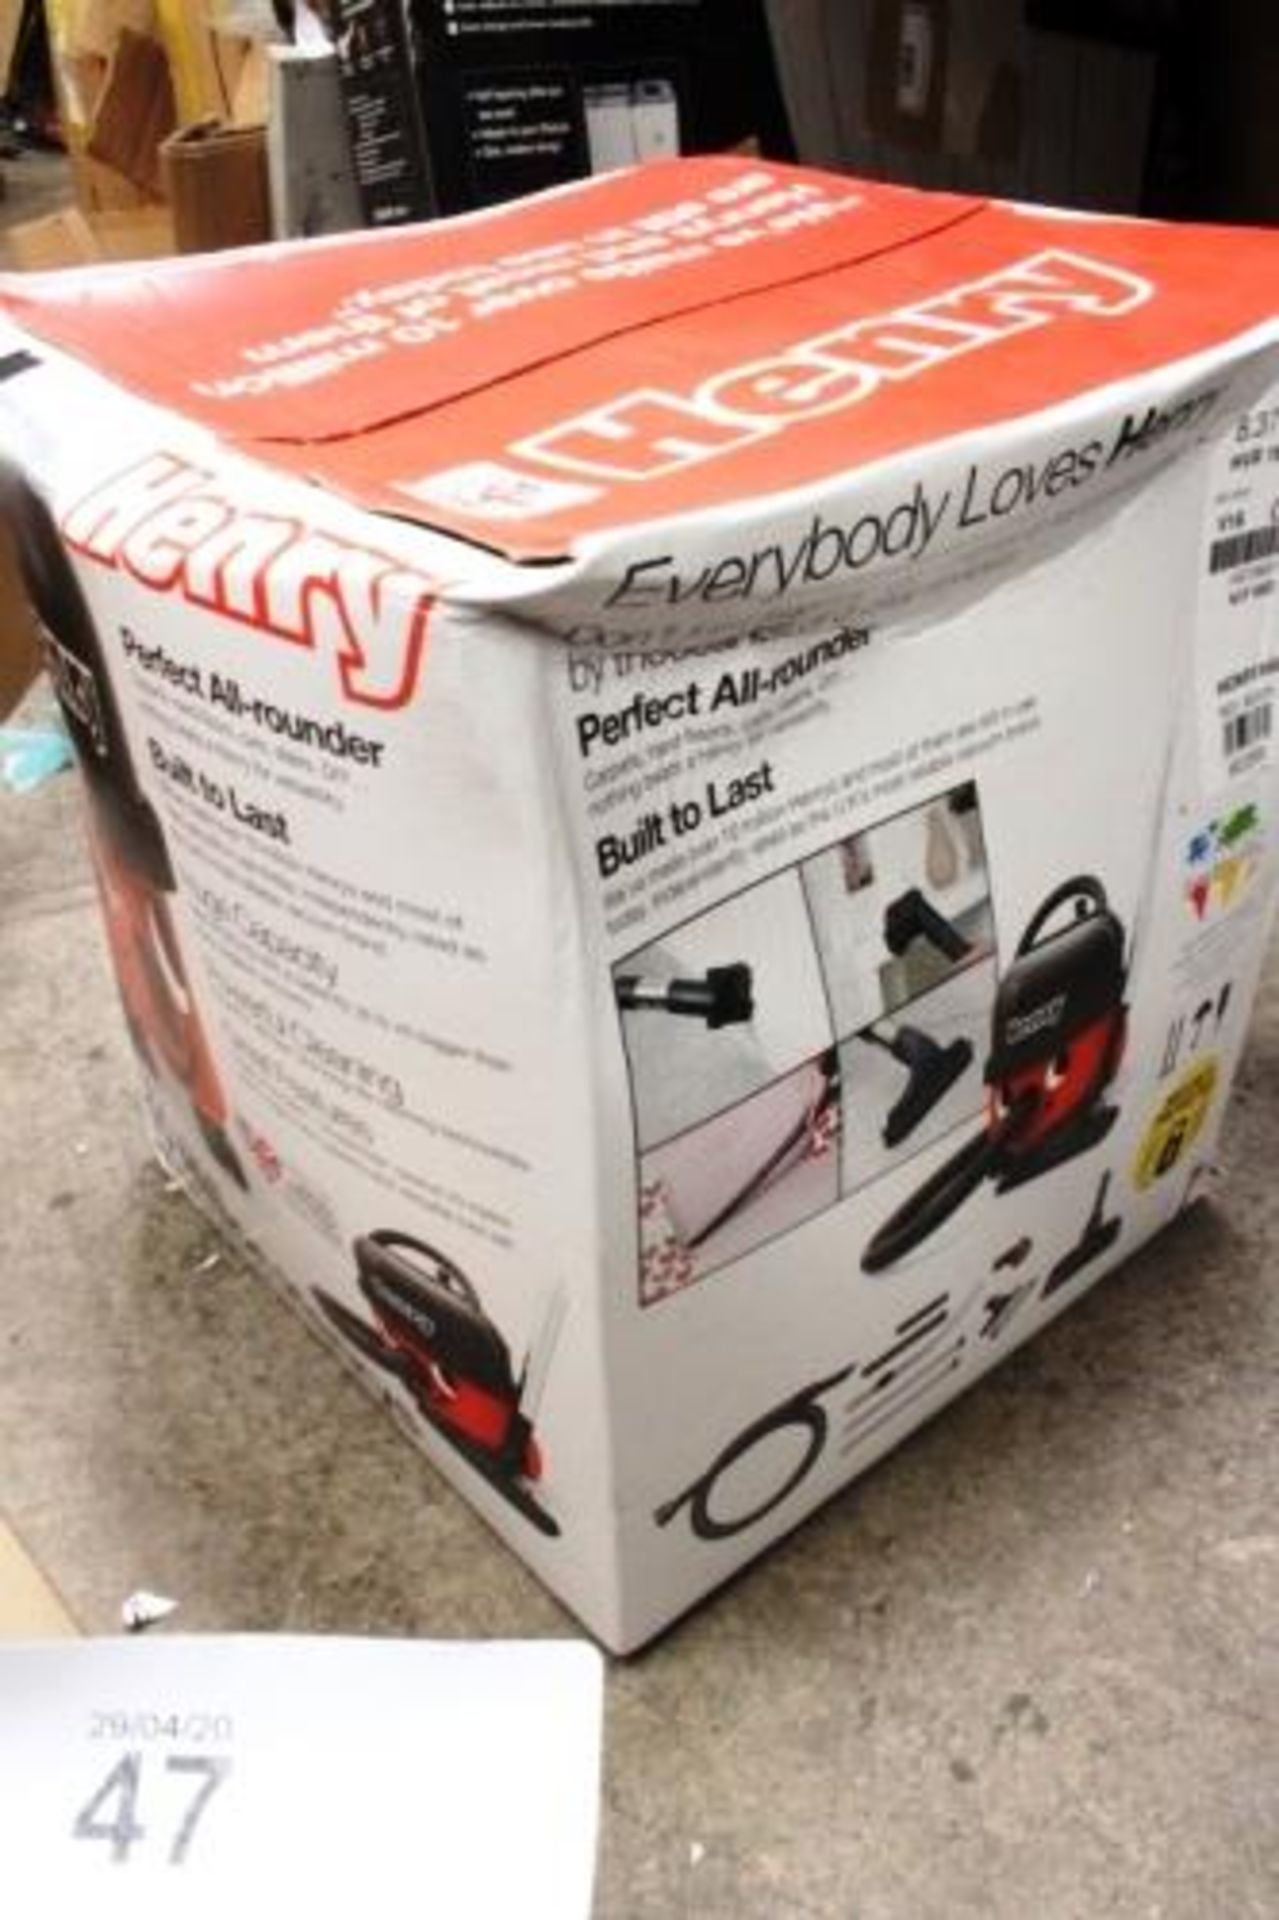 A Henry vacuum cleaner, HVR160-11 V16, model 902395 - Sealed new in box (ES2) - Image 2 of 2